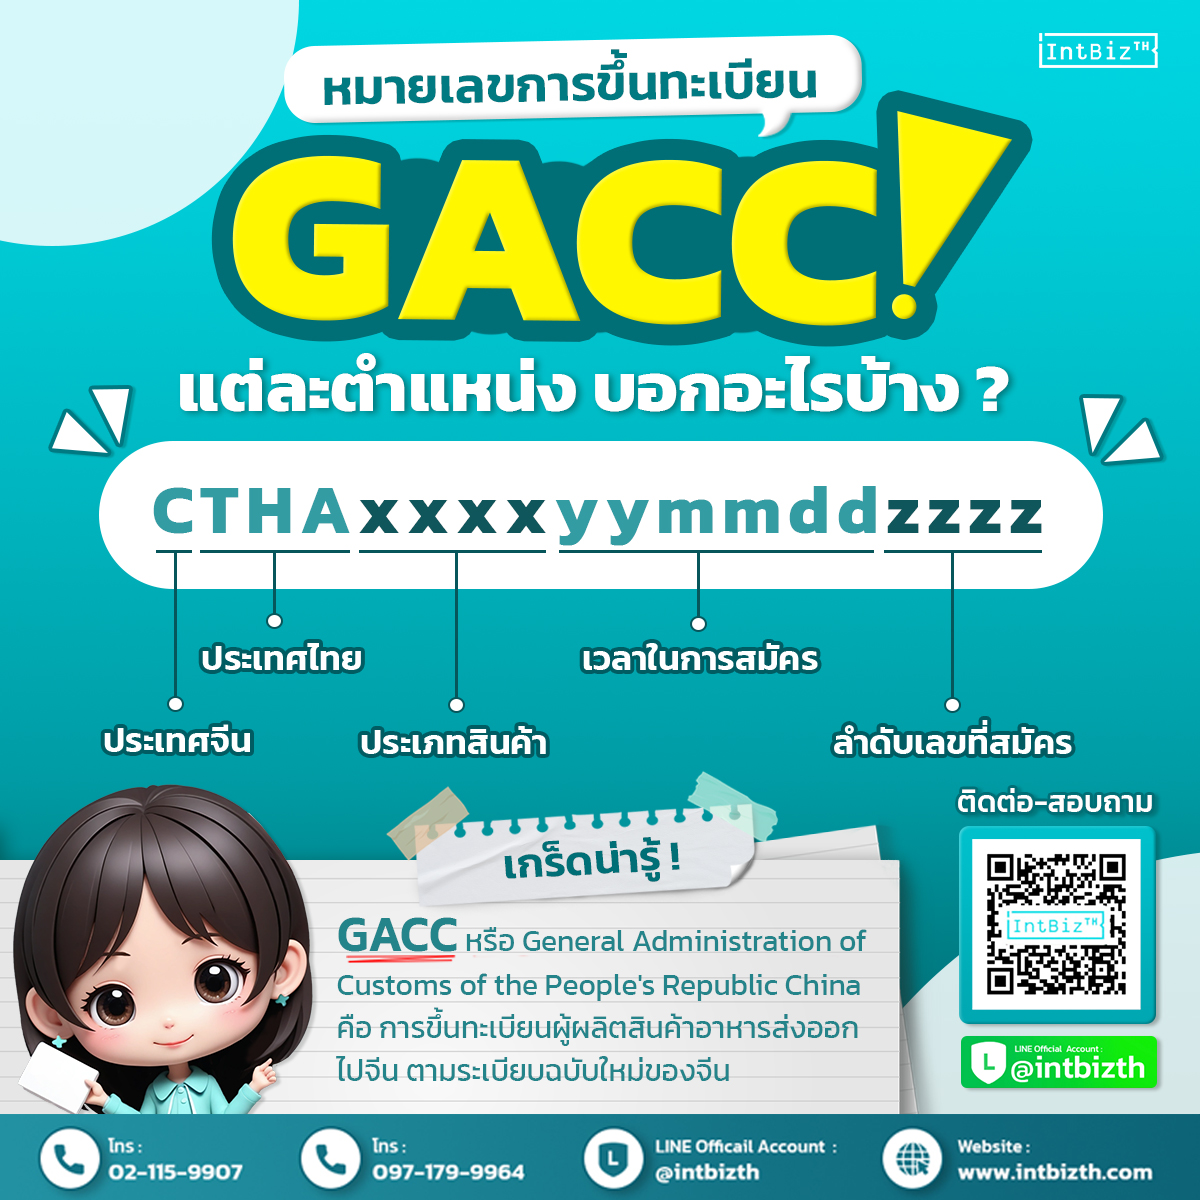 GACC注册号的每个位置表示什么？